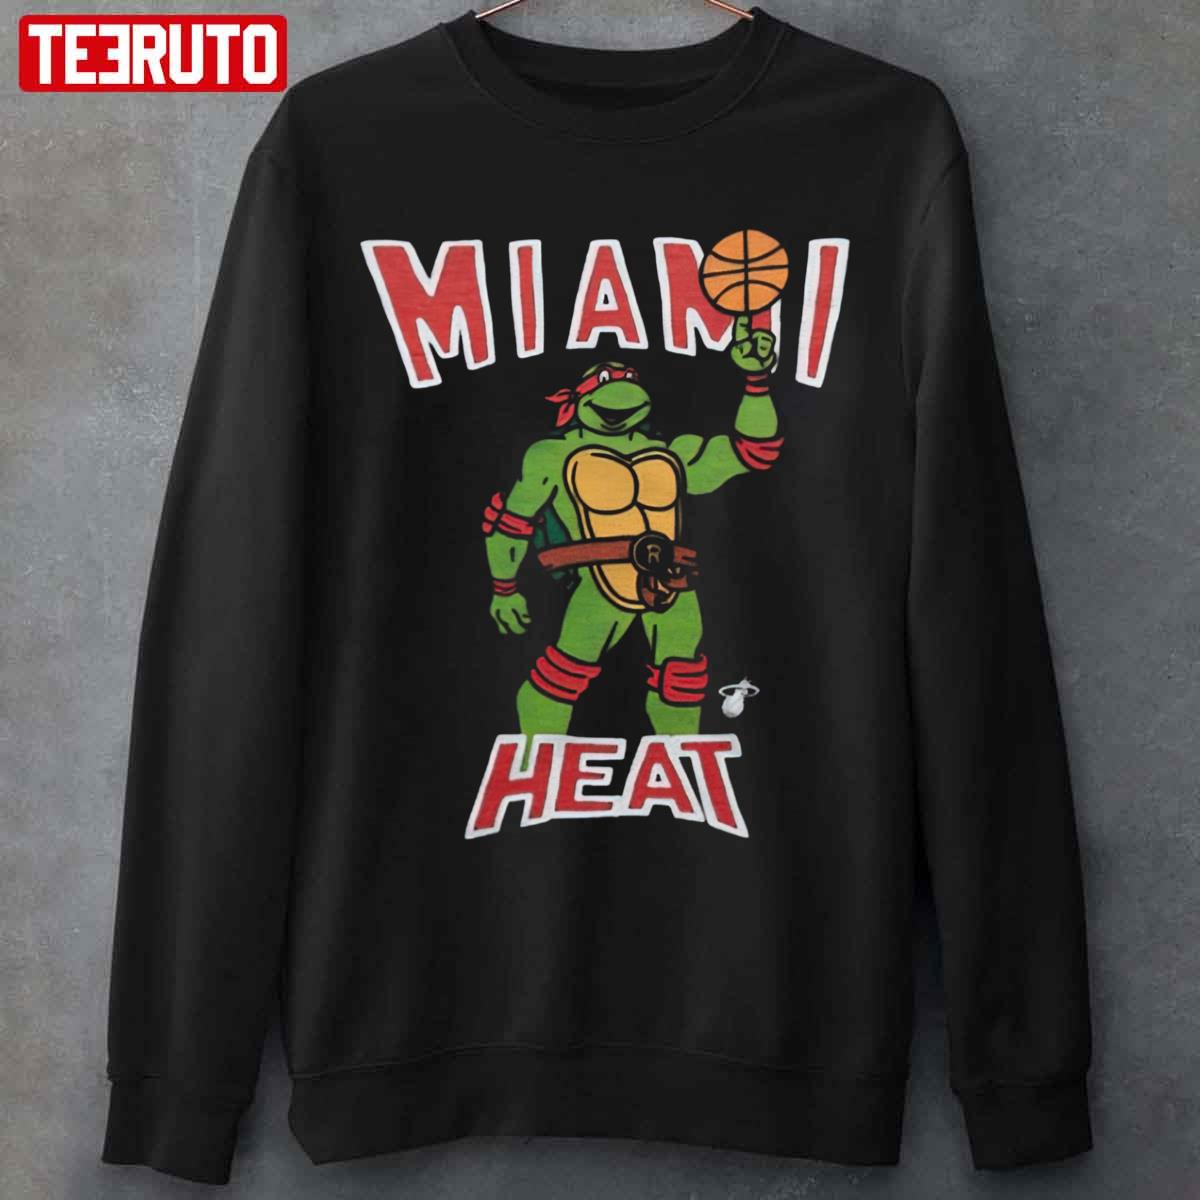 American Thrift x Teenage Mutant Ninja Turtles Raphael Vintage T-Shirt Black - Size M